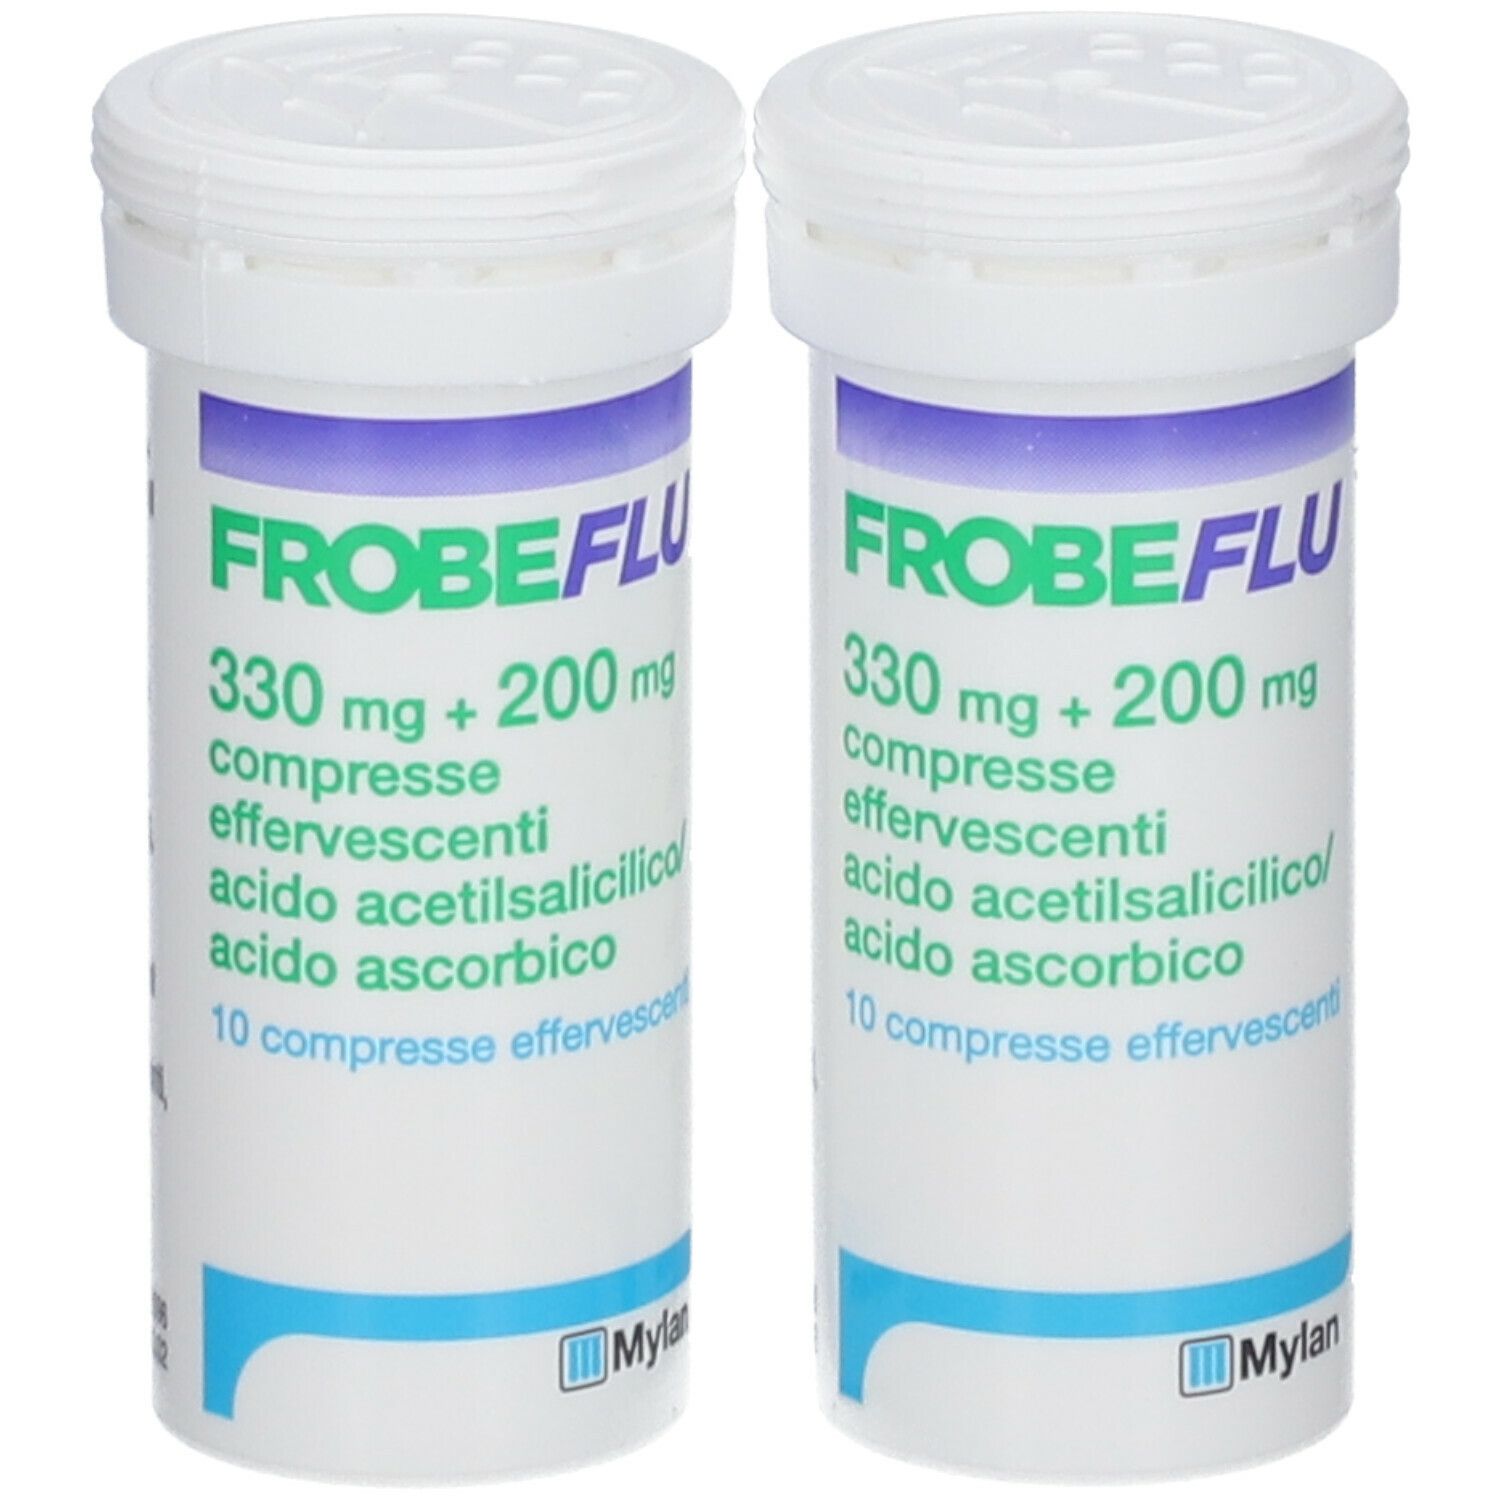 FROBEFLU 330 mg + 200 mg